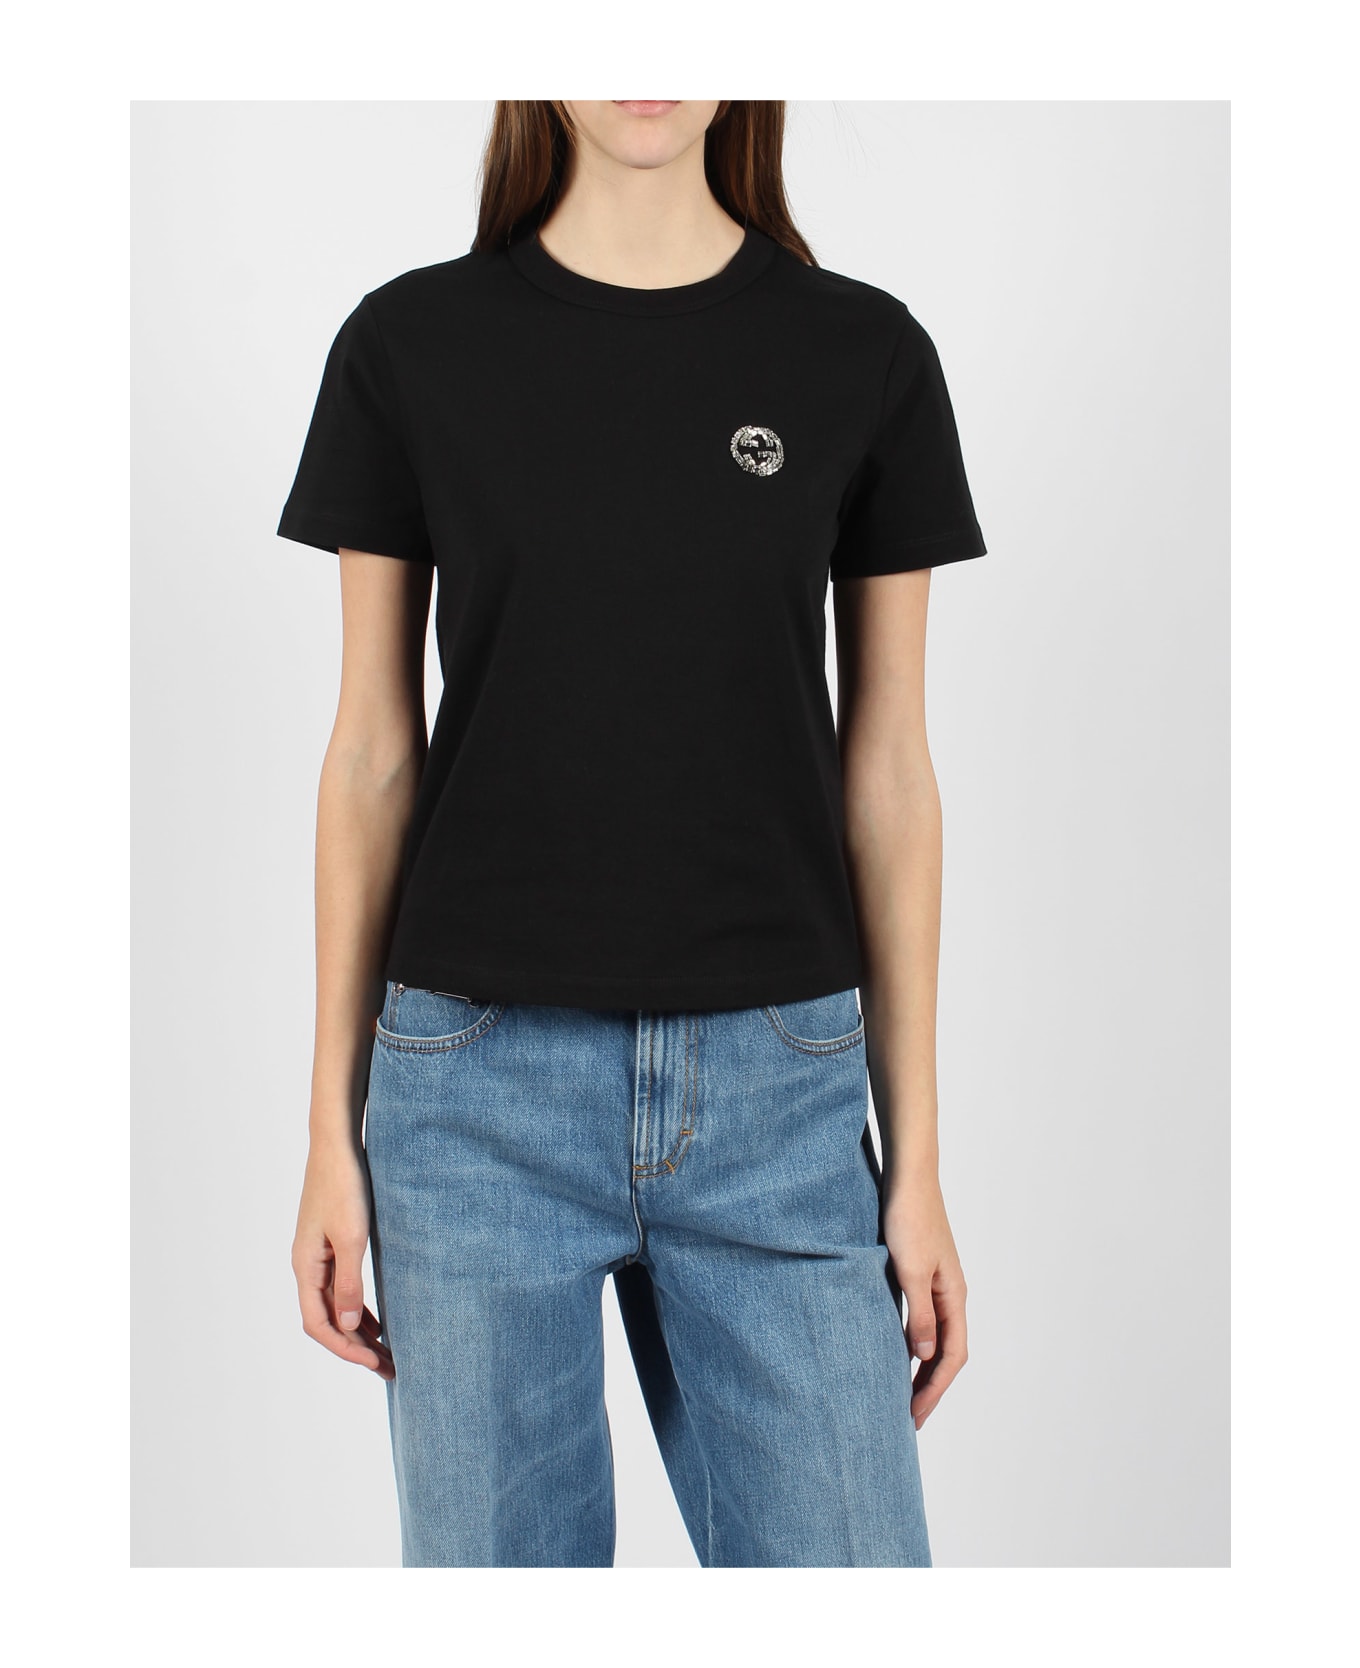 Gucci T-shirt - Black Tシャツ